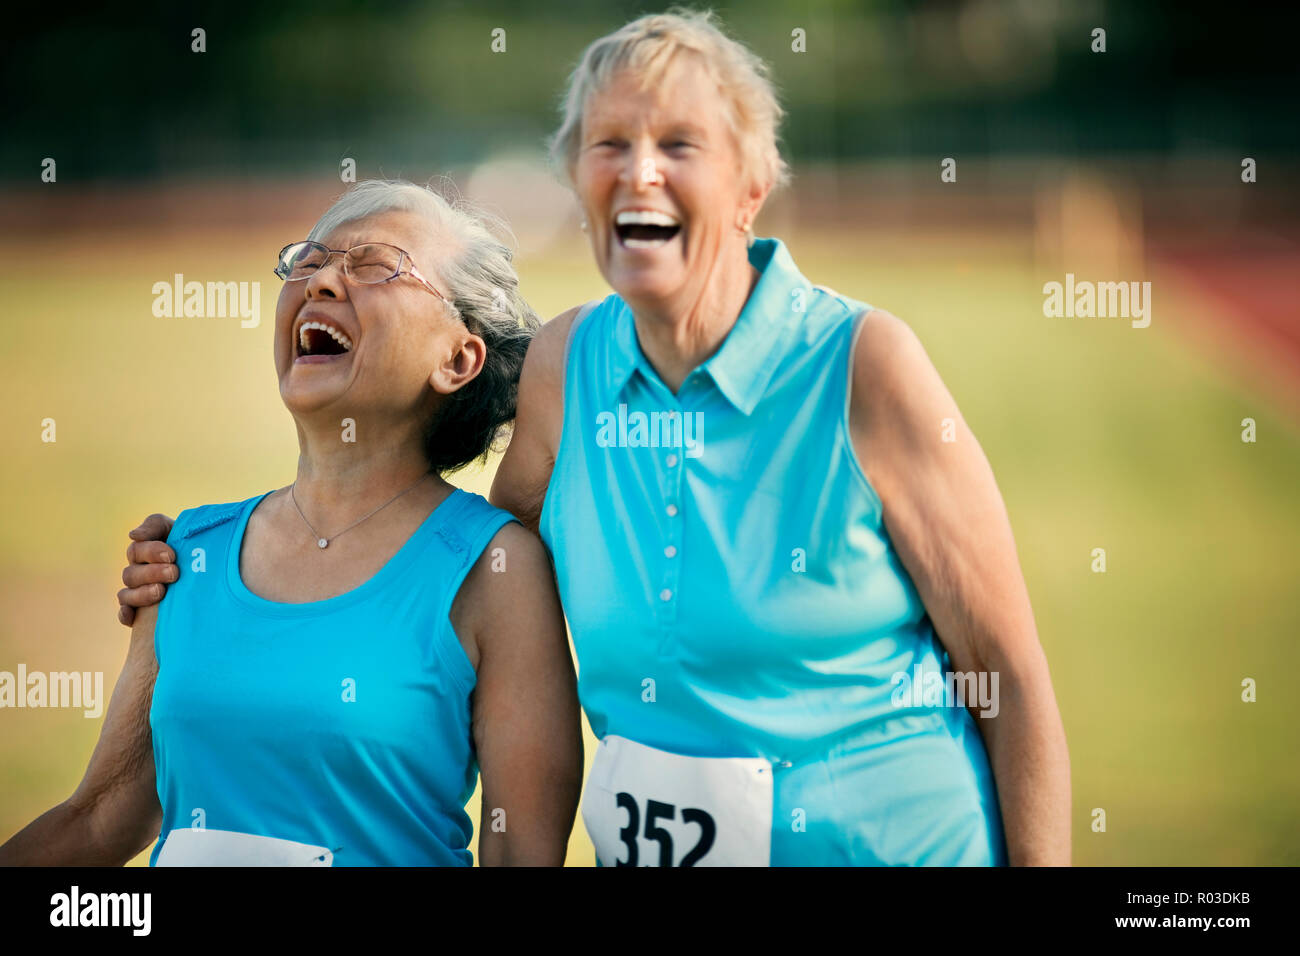 Dos mujeres de edad feliz riendo después de competir en un evento atlético. Foto de stock